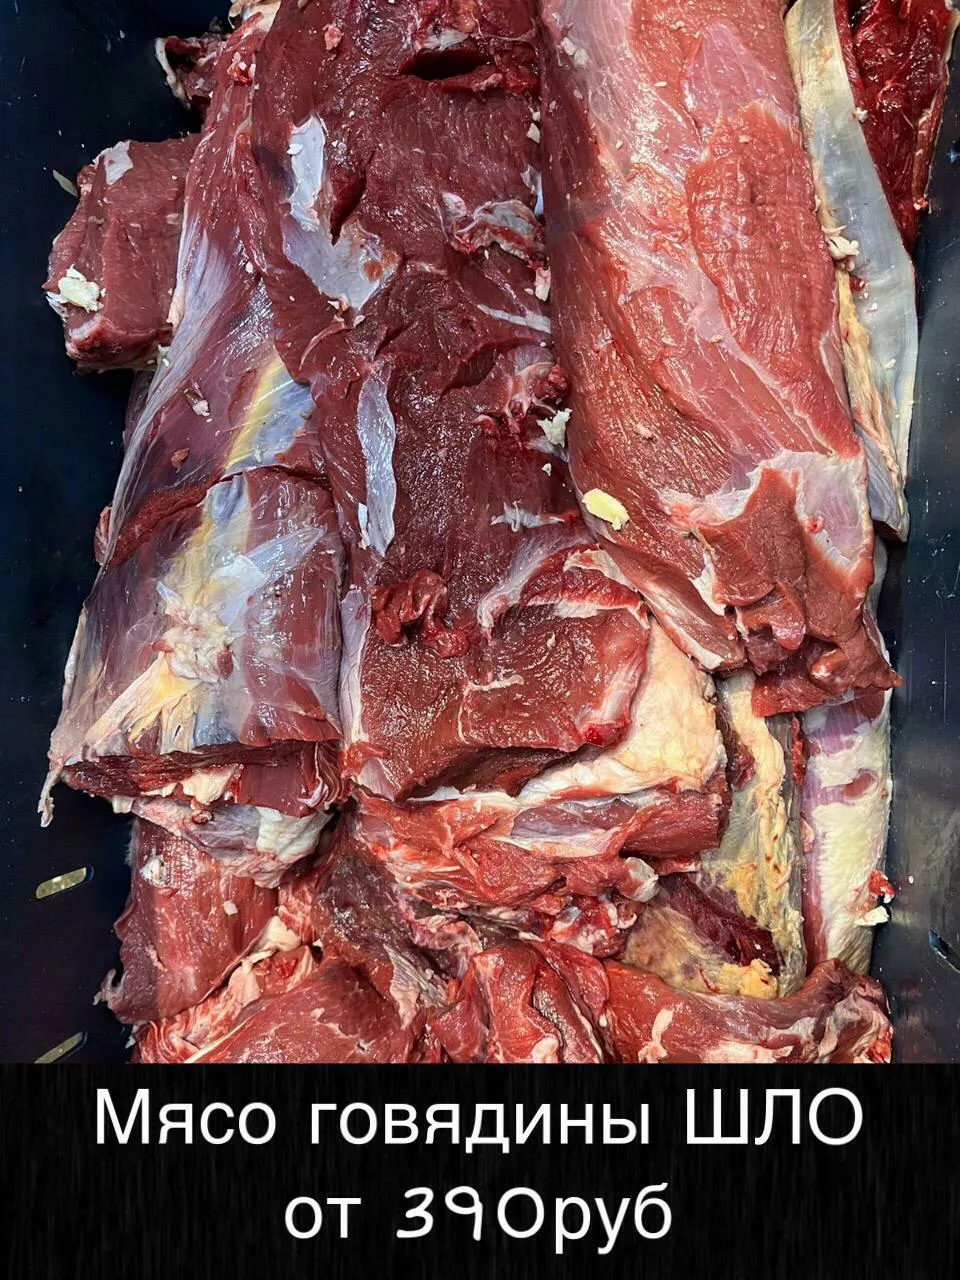 Фотография продукта Мясо оптом, доставим до вашего региона